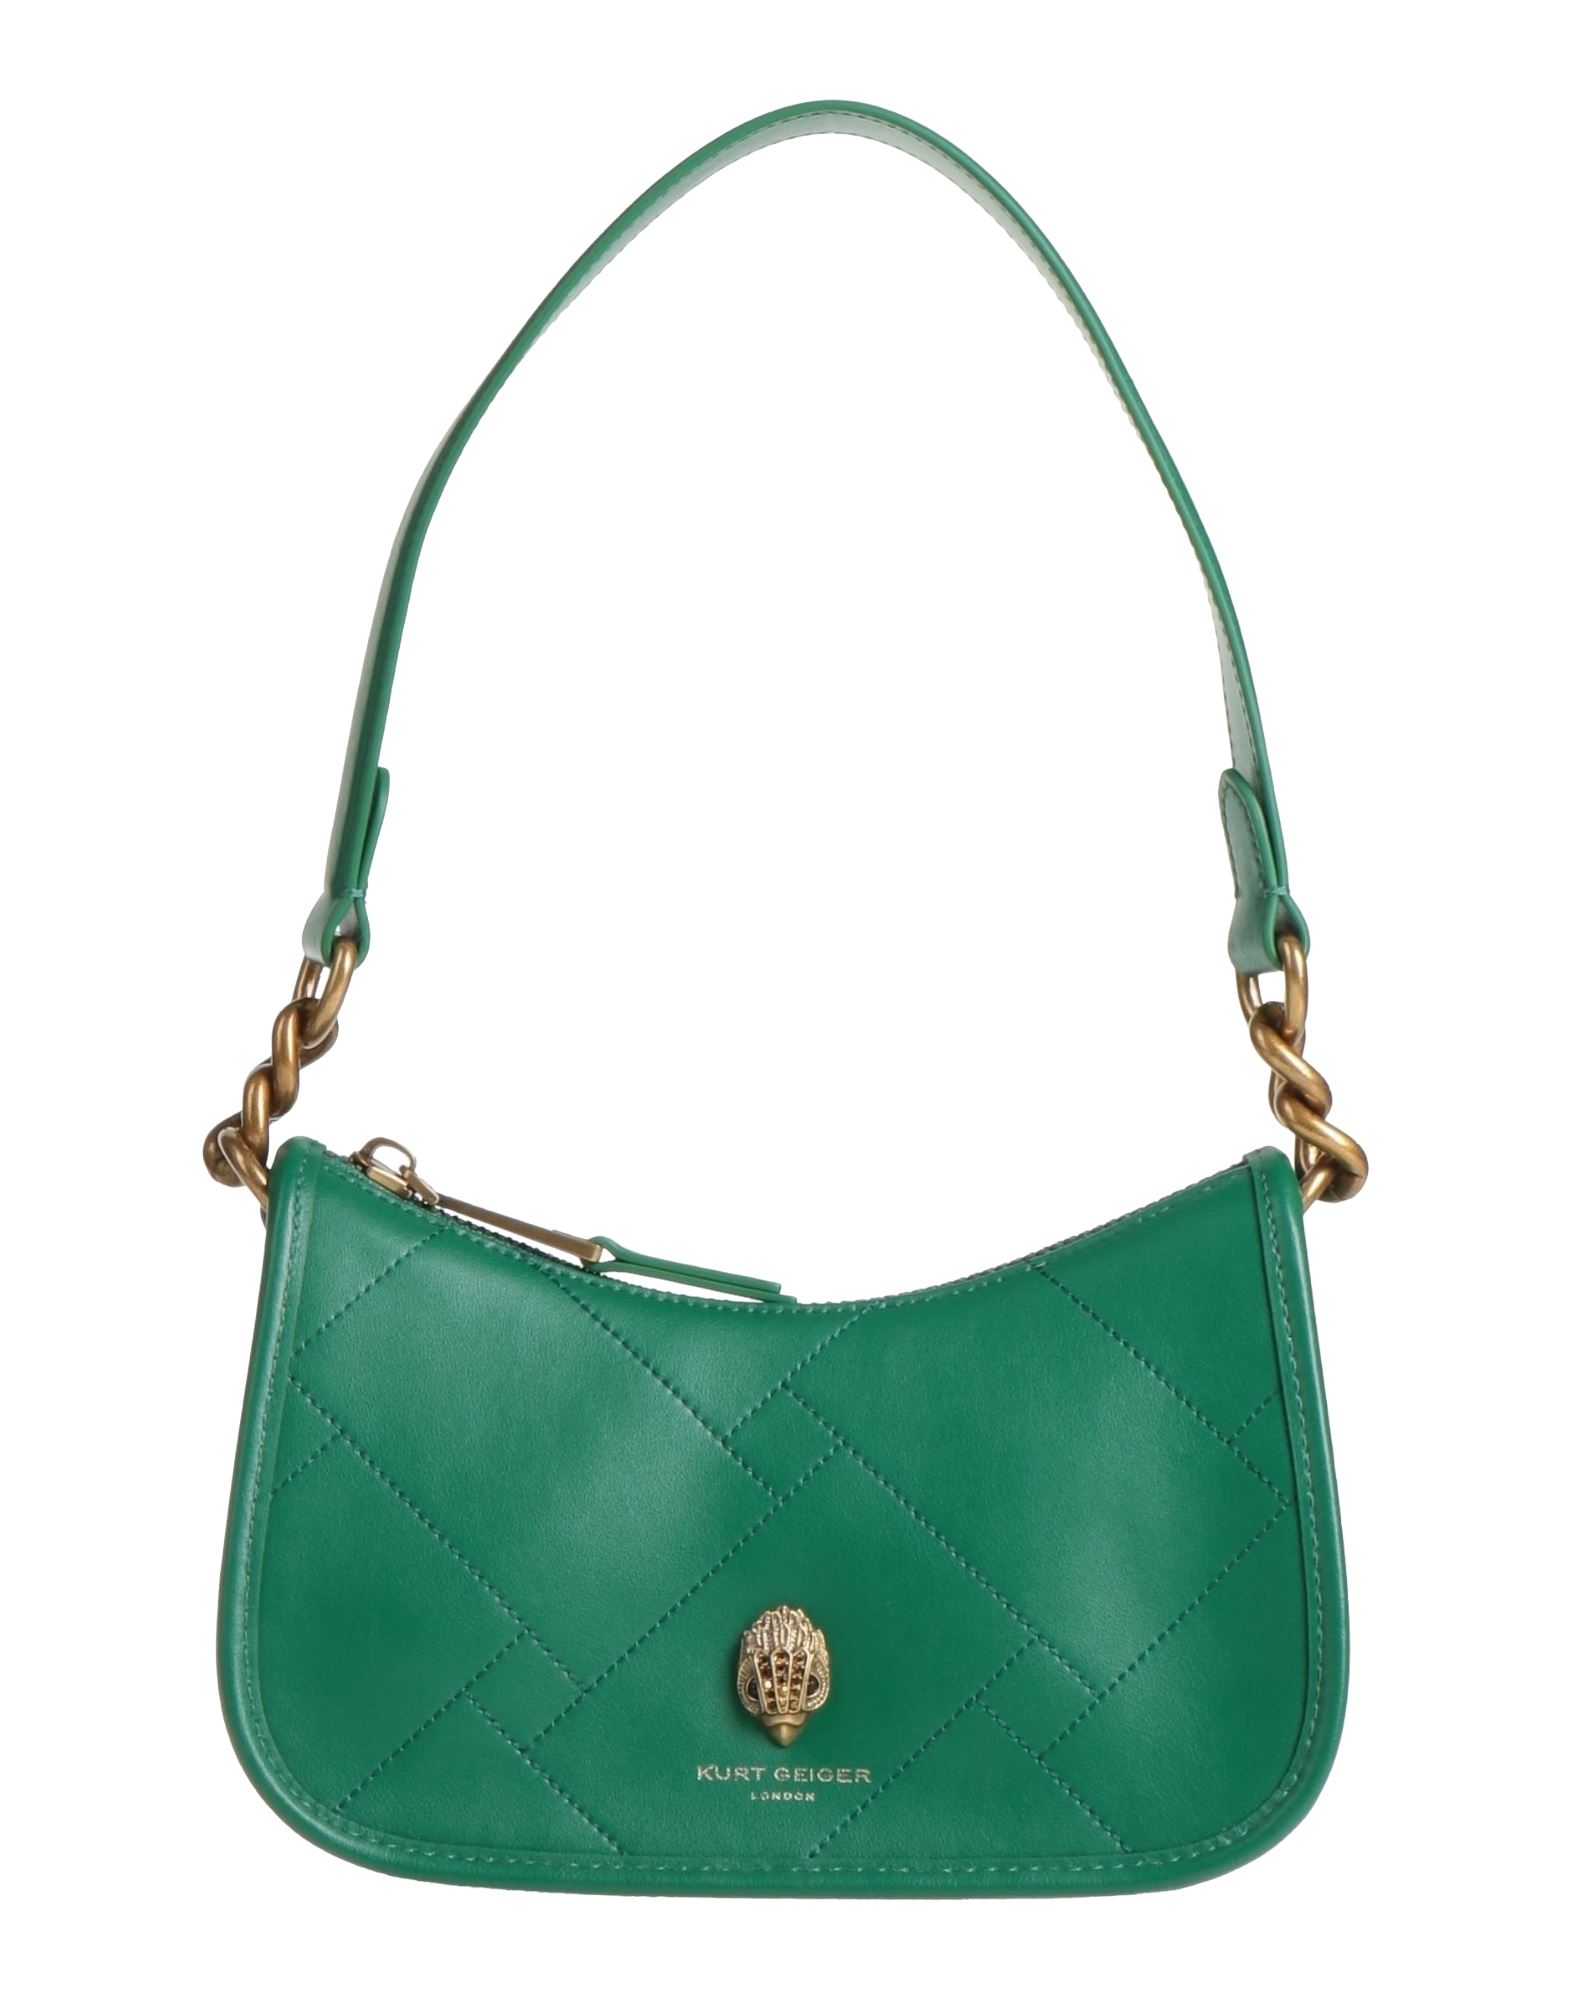 Kurt Geiger Handbags In Green